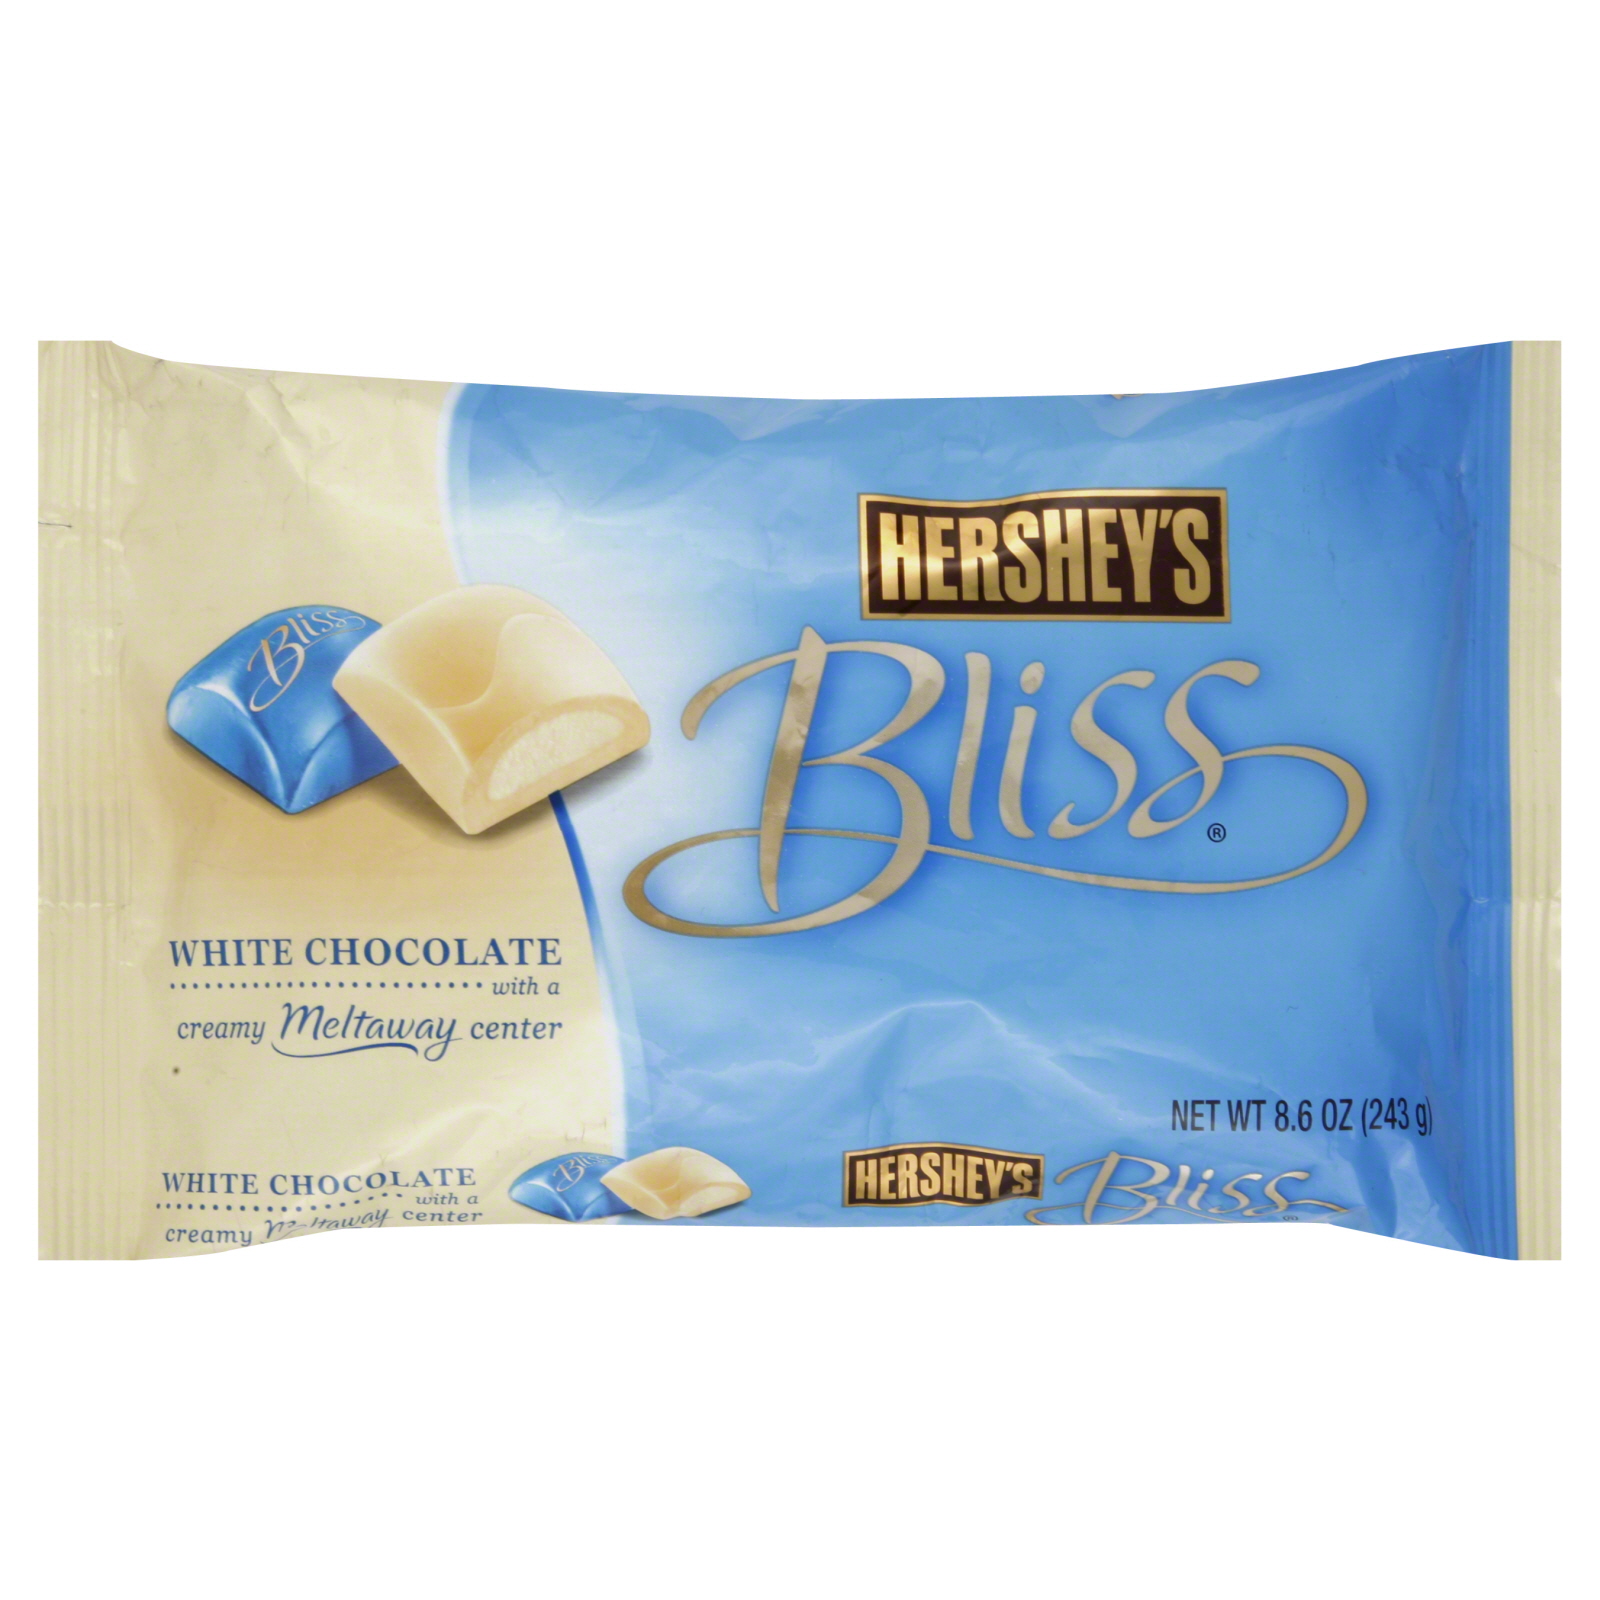 Hershey's Bliss White Chocolate 8.6 oz (243 g)